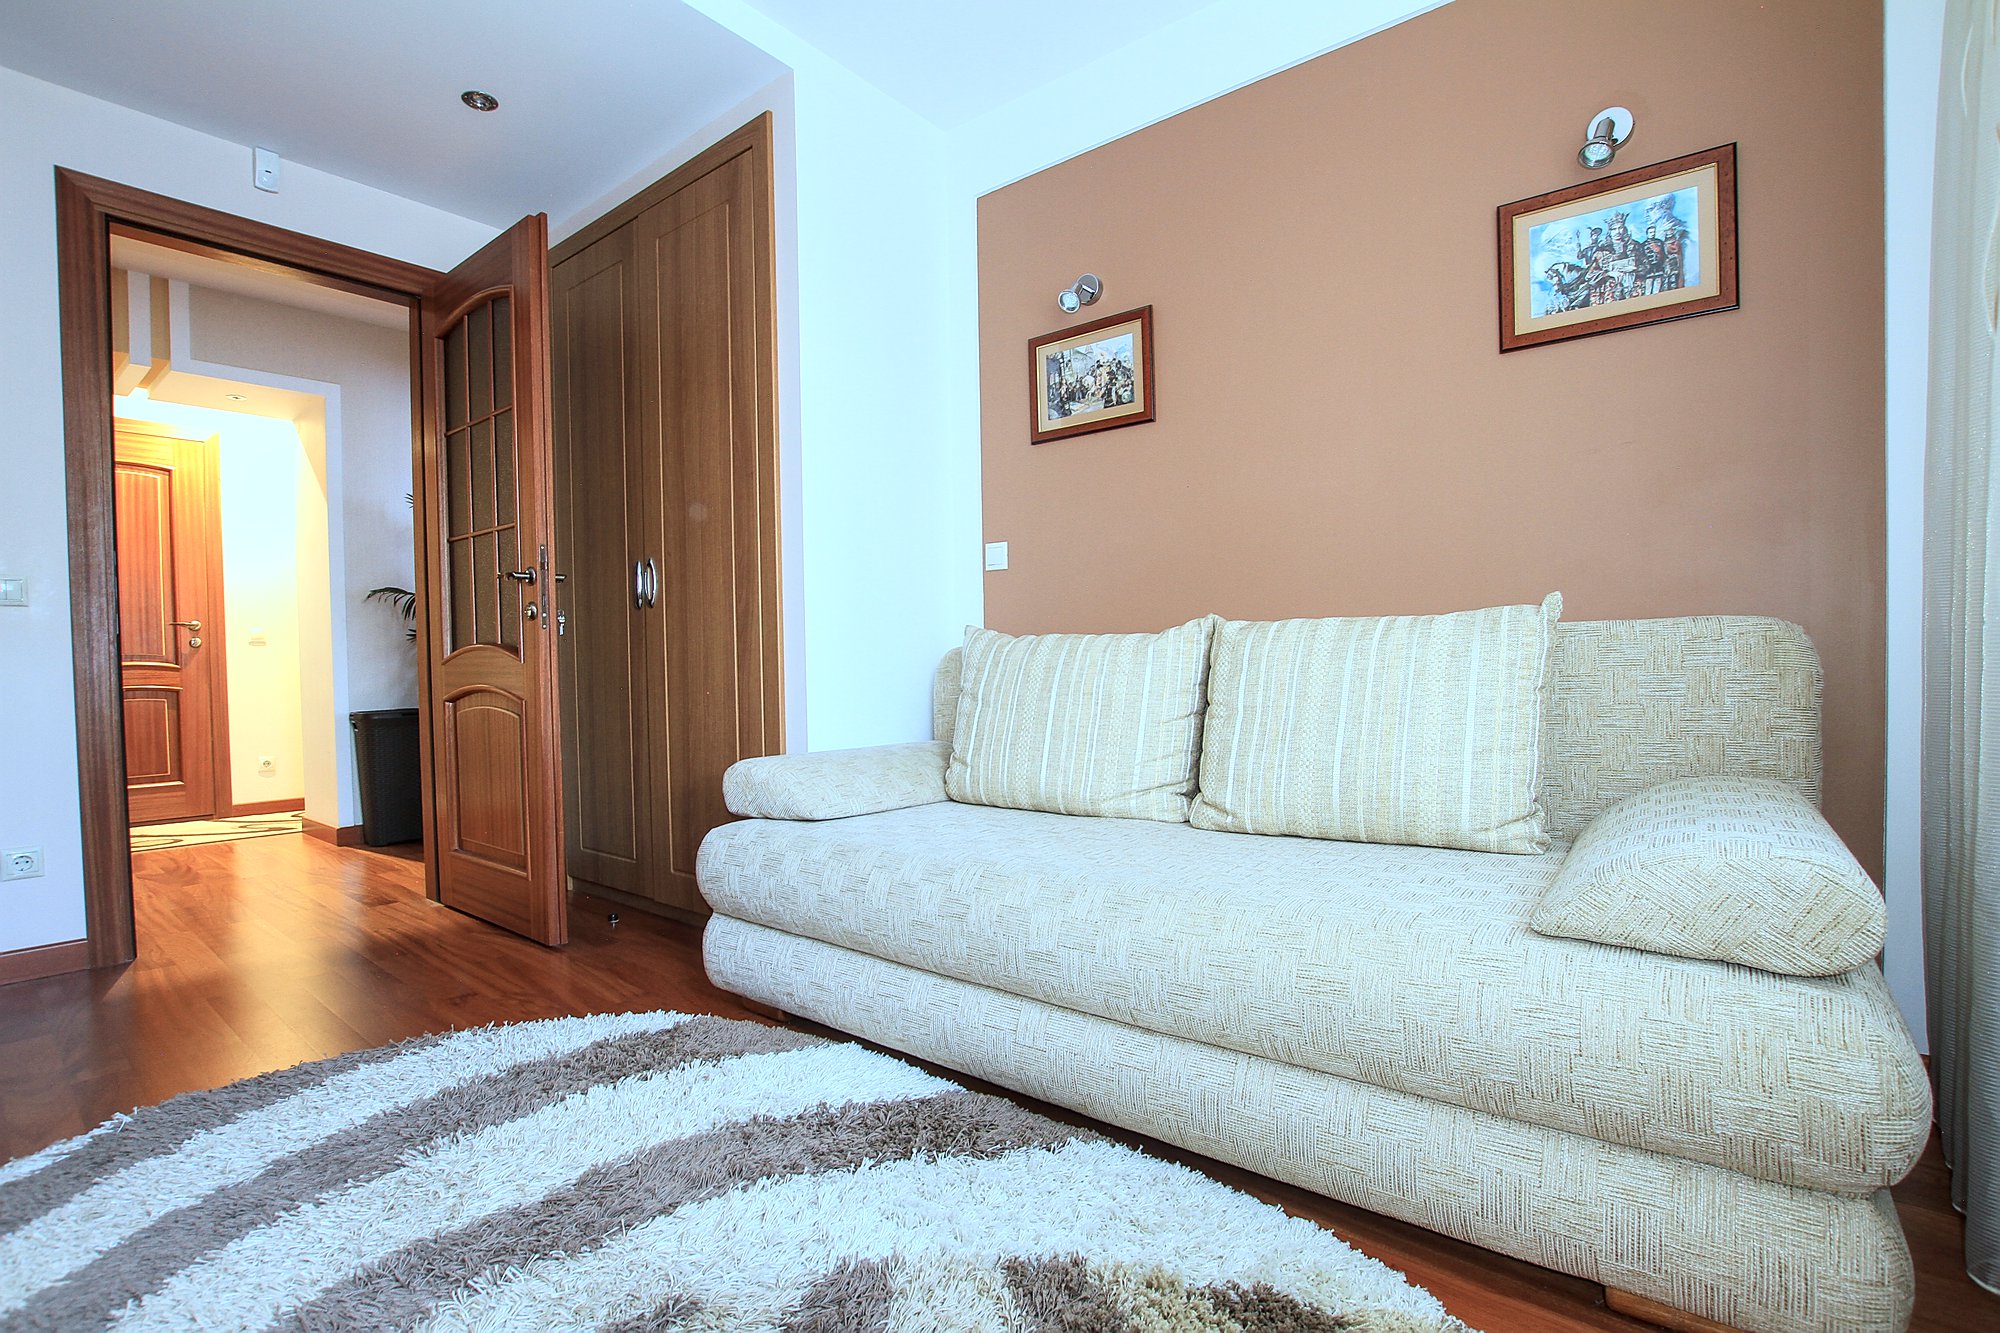 Botanica Family Apartment es un apartamento de 3 habitaciones en alquiler en Chisinau, Moldova